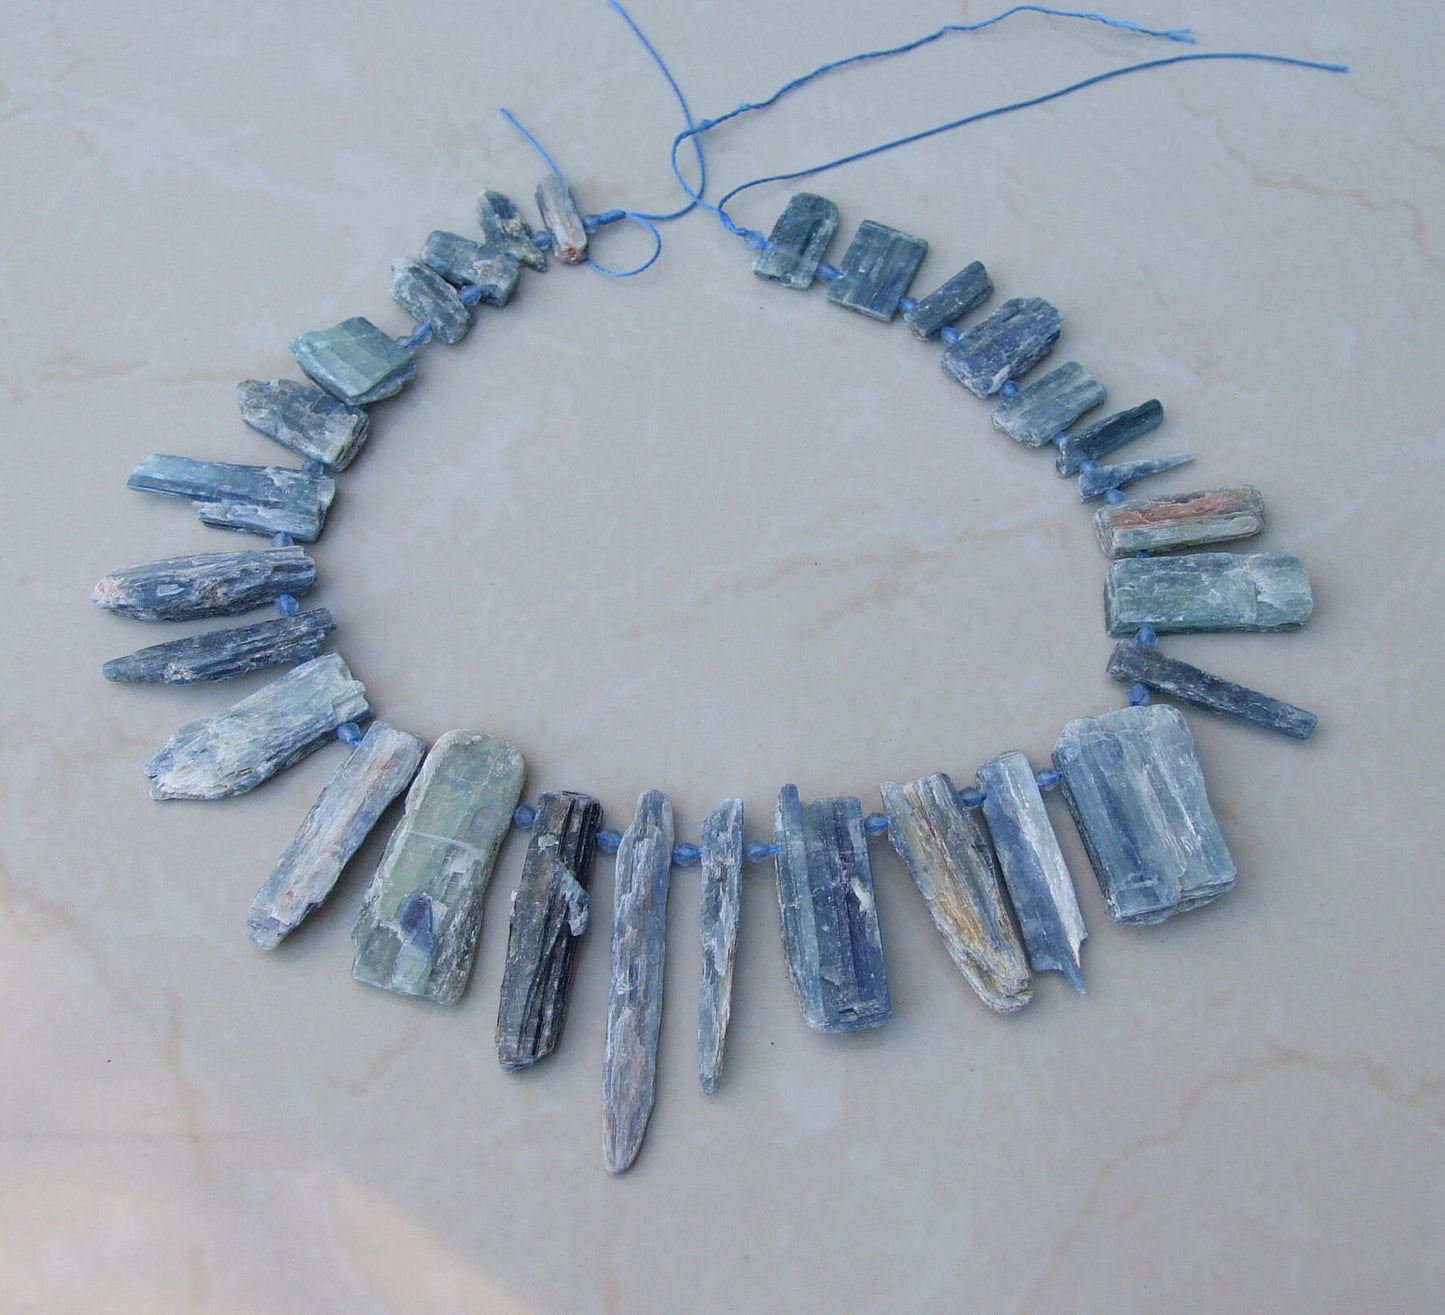 Blue Green Kyanite Beads, Raw Natural Kyanite Slice, Kyanite Pendants, Gemstone Beads, Kyanite Jewelry, Full / Half Strand - 20mm to 40/65mm